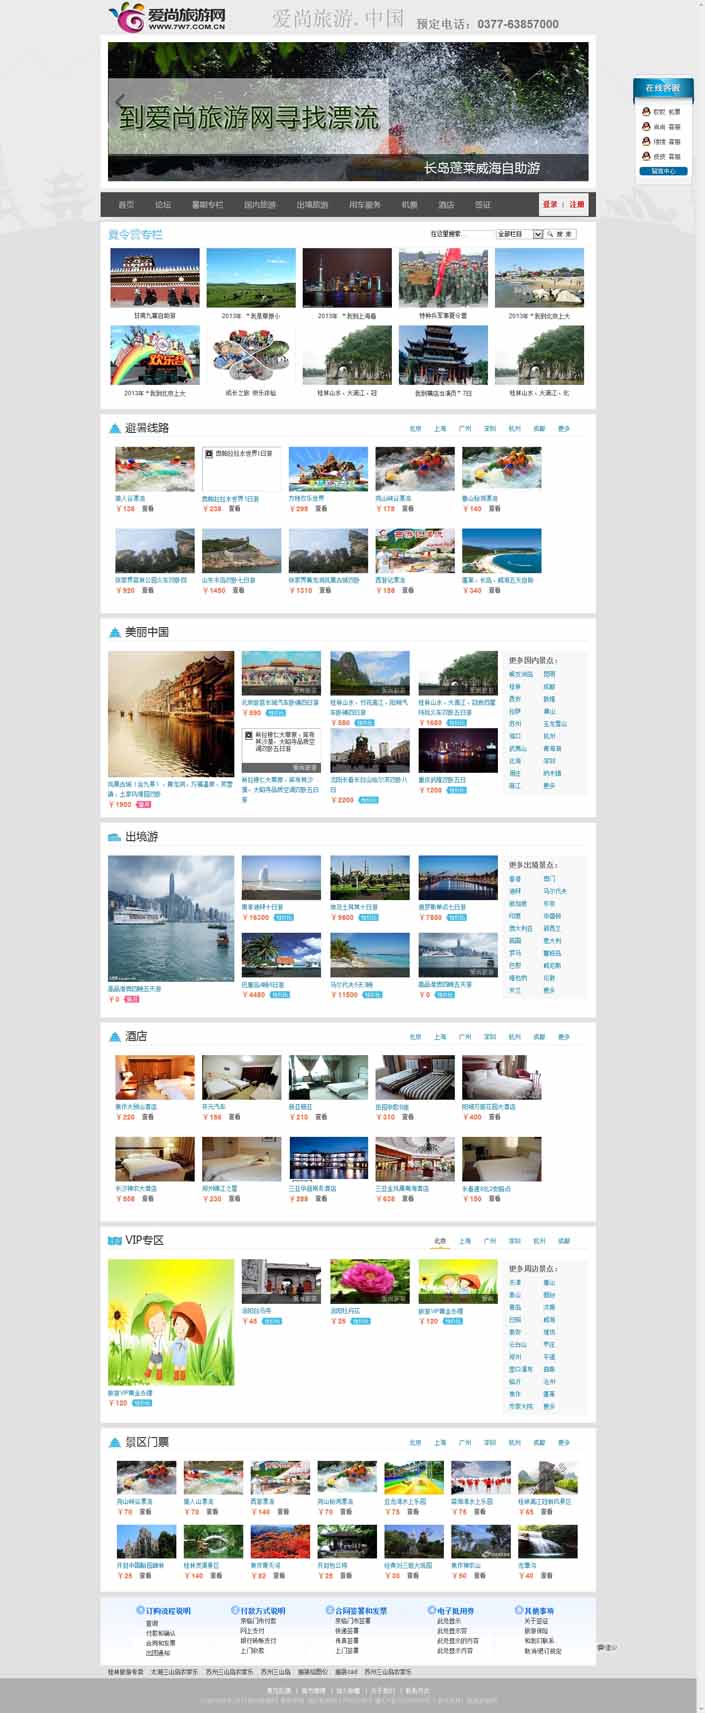 河南旅游网站建设案例